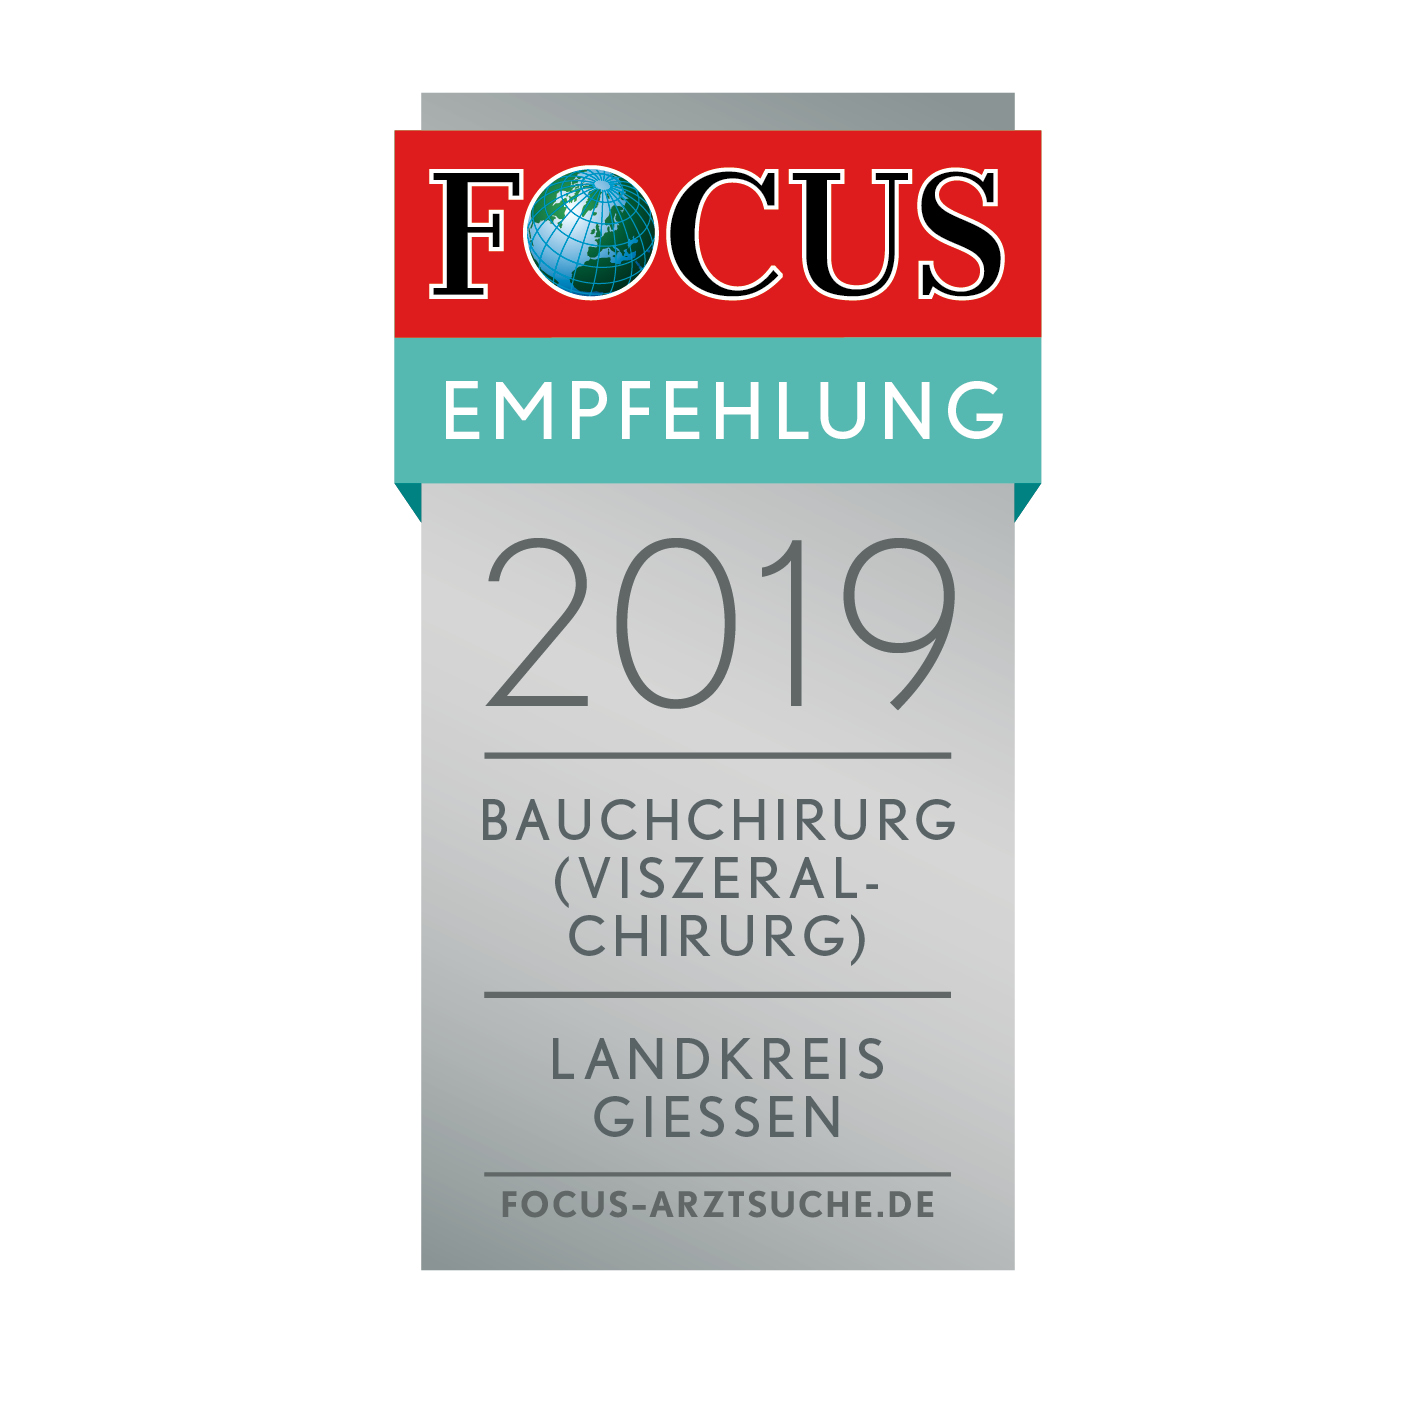 FOCUS Bauchchirurg 2019